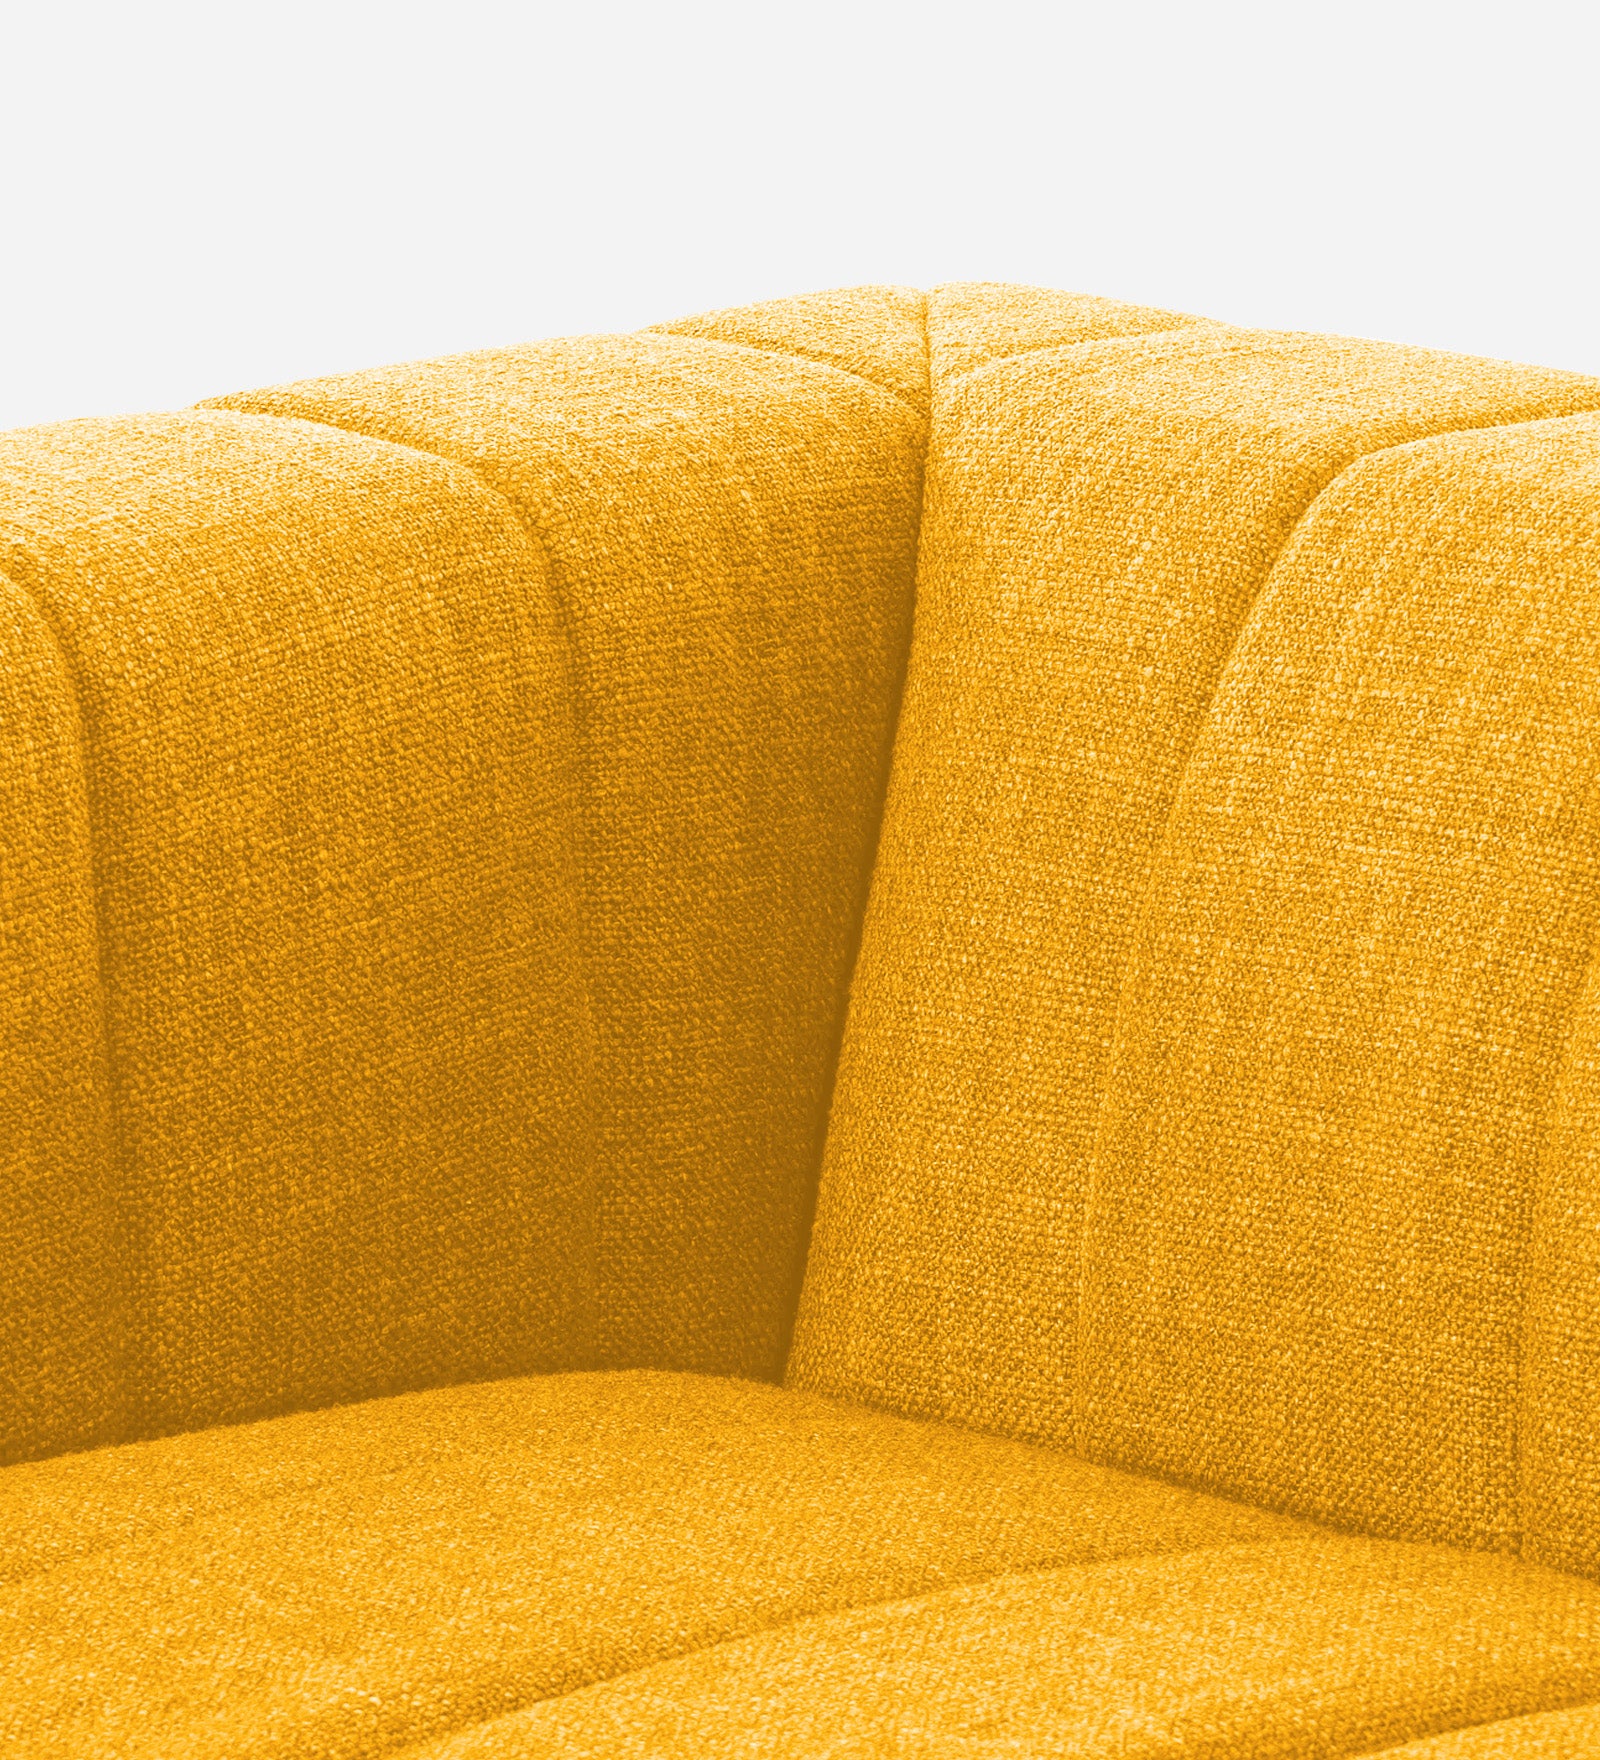 Lara Fabric 1 Seater Sofa in Bold Yellow Colour